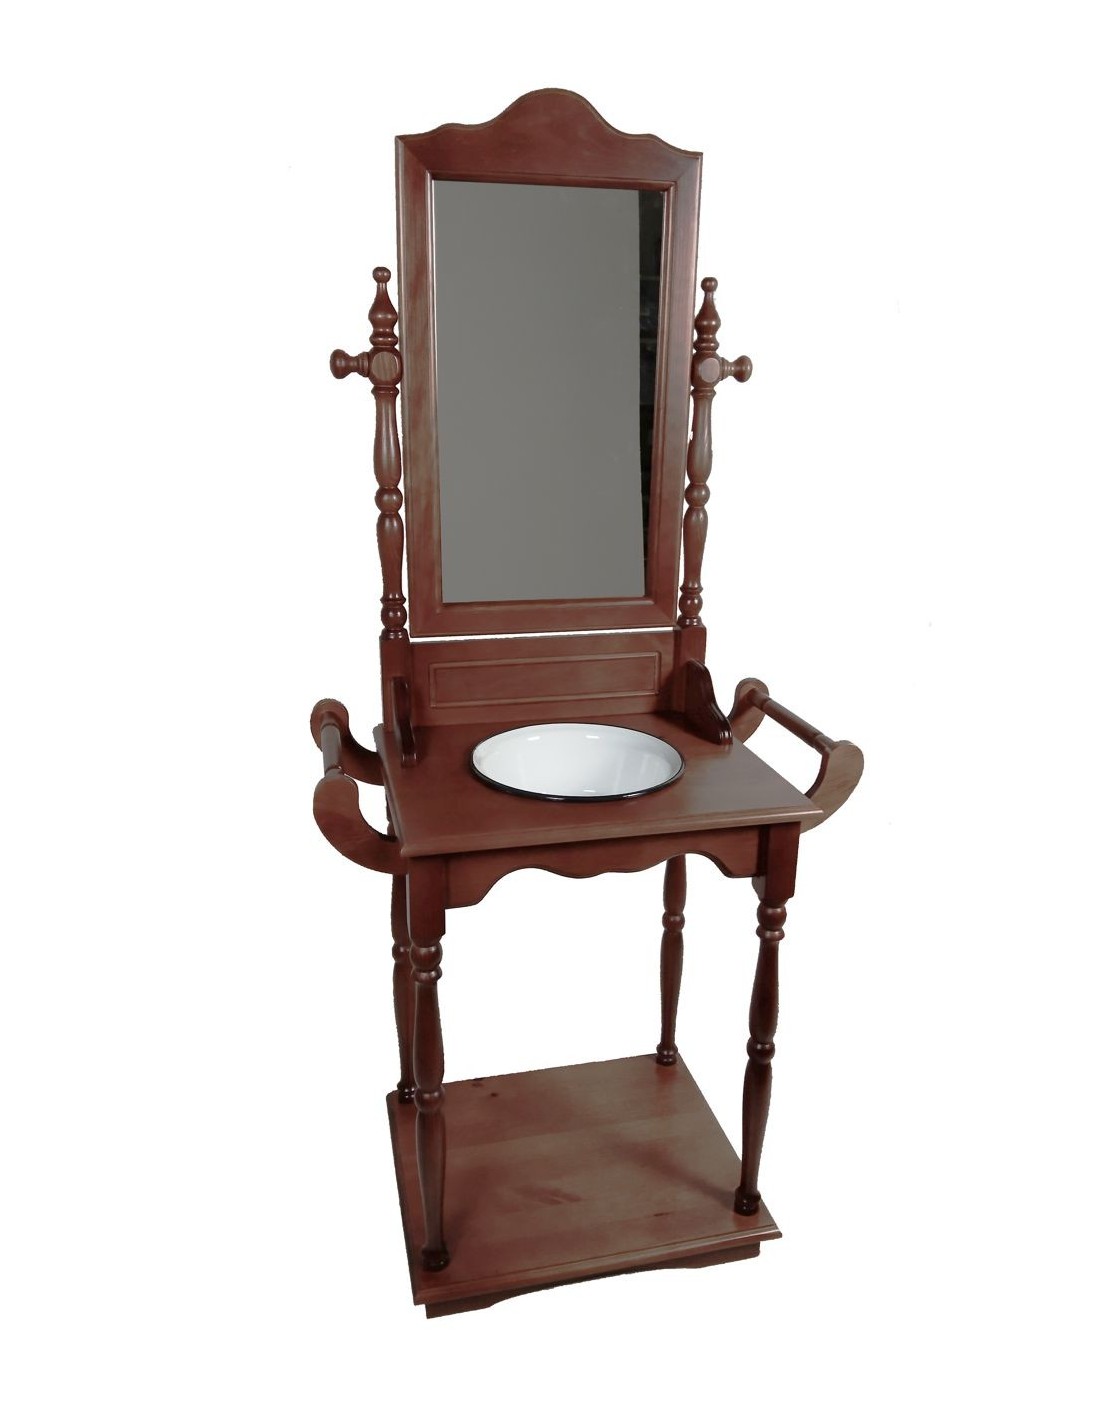 Vasque en bois massif verni avec vasque et miroir, décoration de meuble d'appoint classique.